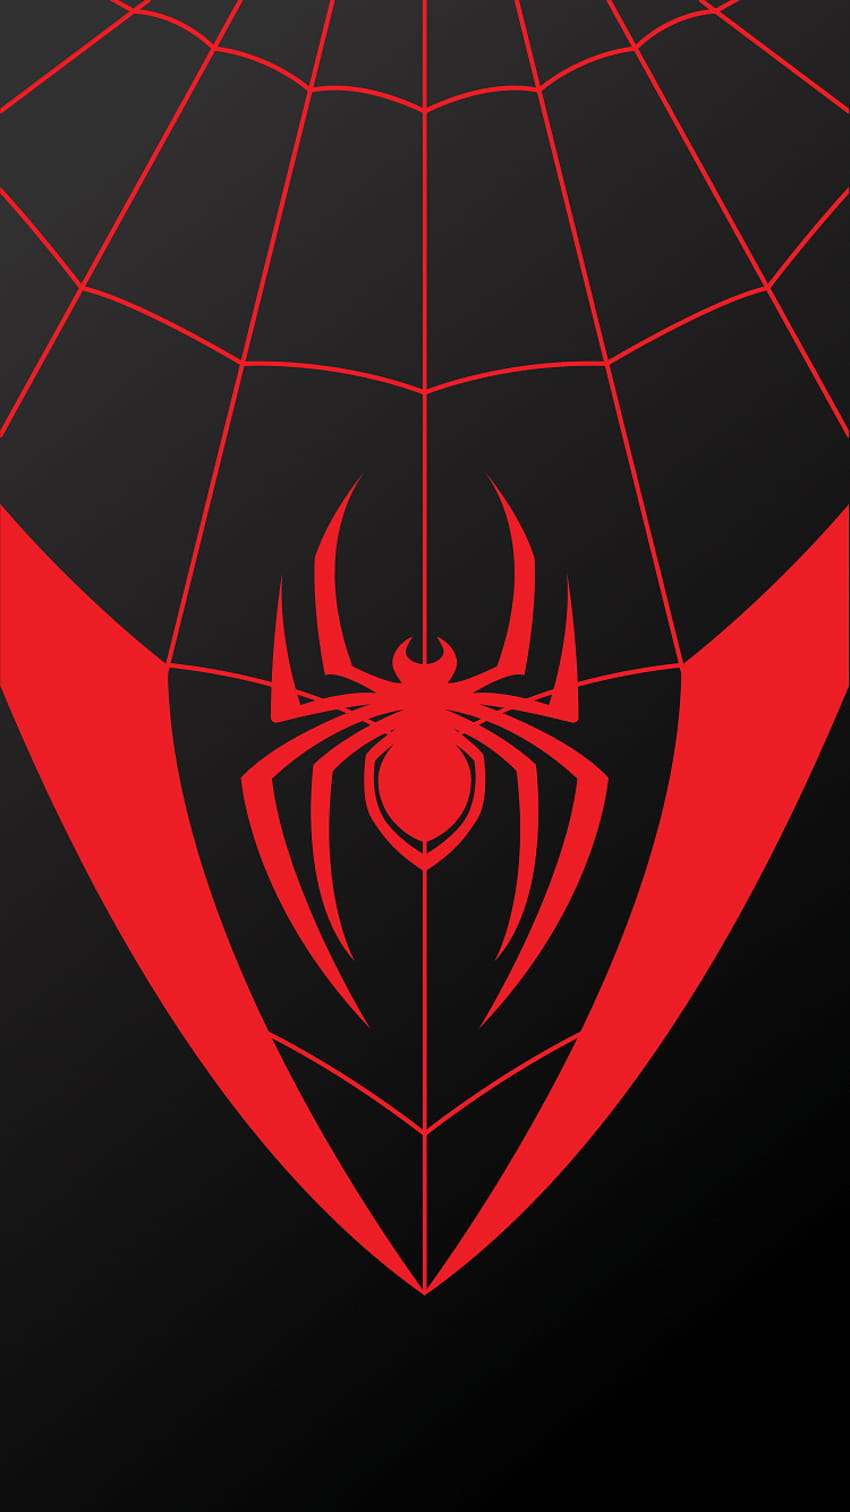 Marvel SpiderMan logo wallpaper simple background SpiderMan 2018   Dark background wallpaper Spider man 2018 Man logo